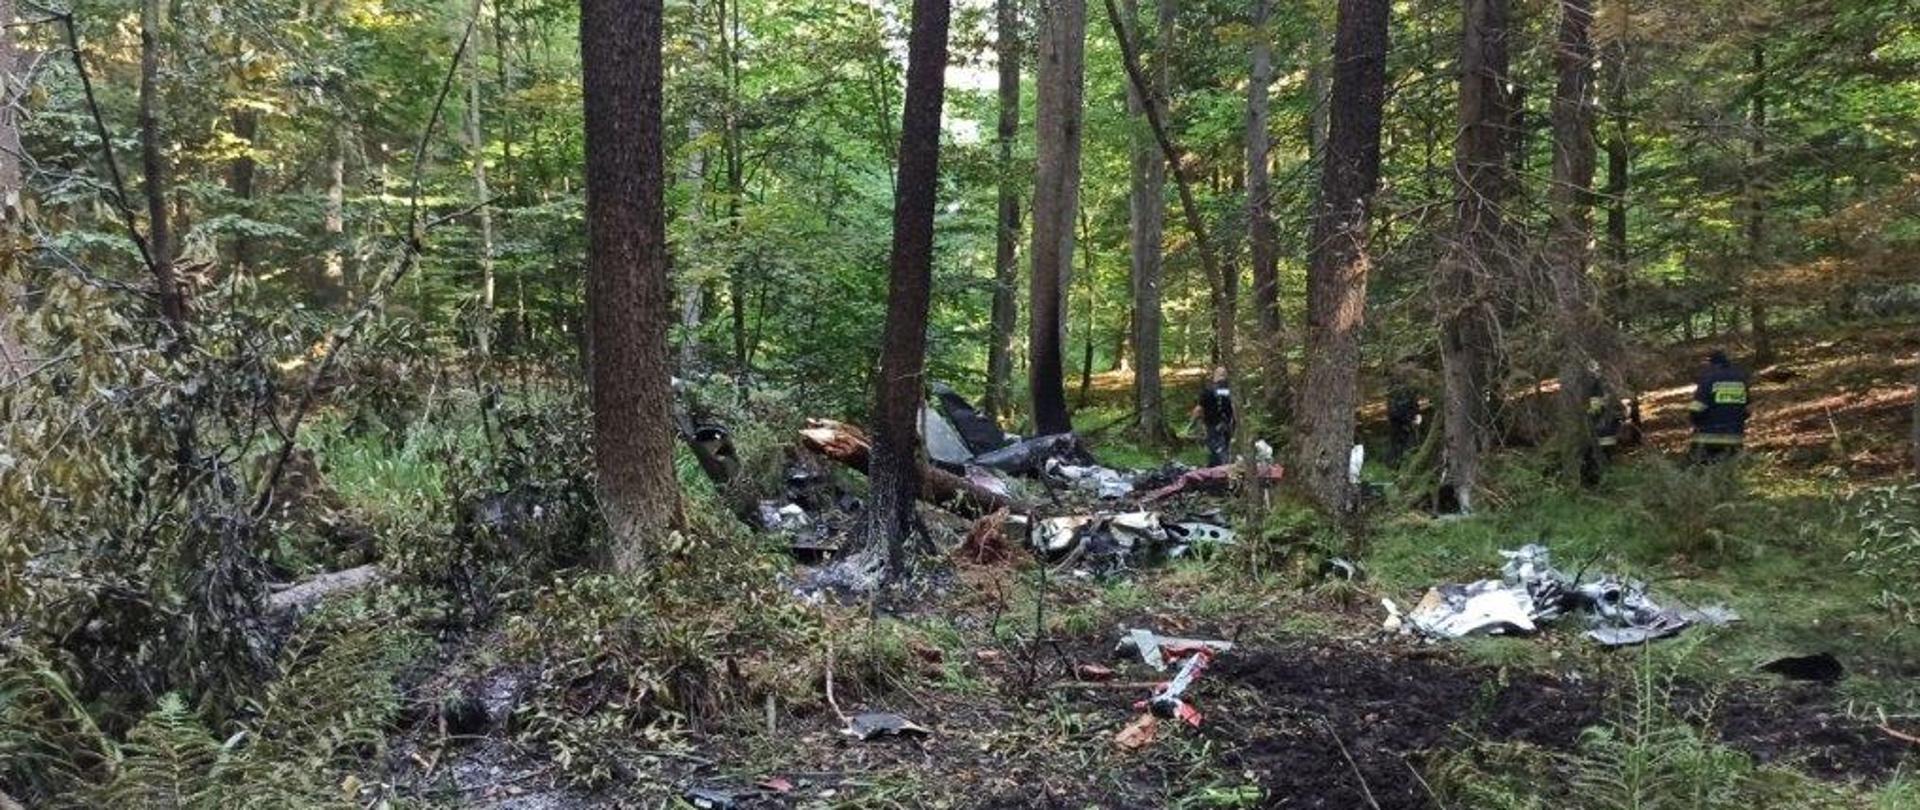 Zdjęcie ukazuje resztki po upadku samolotu w lesie